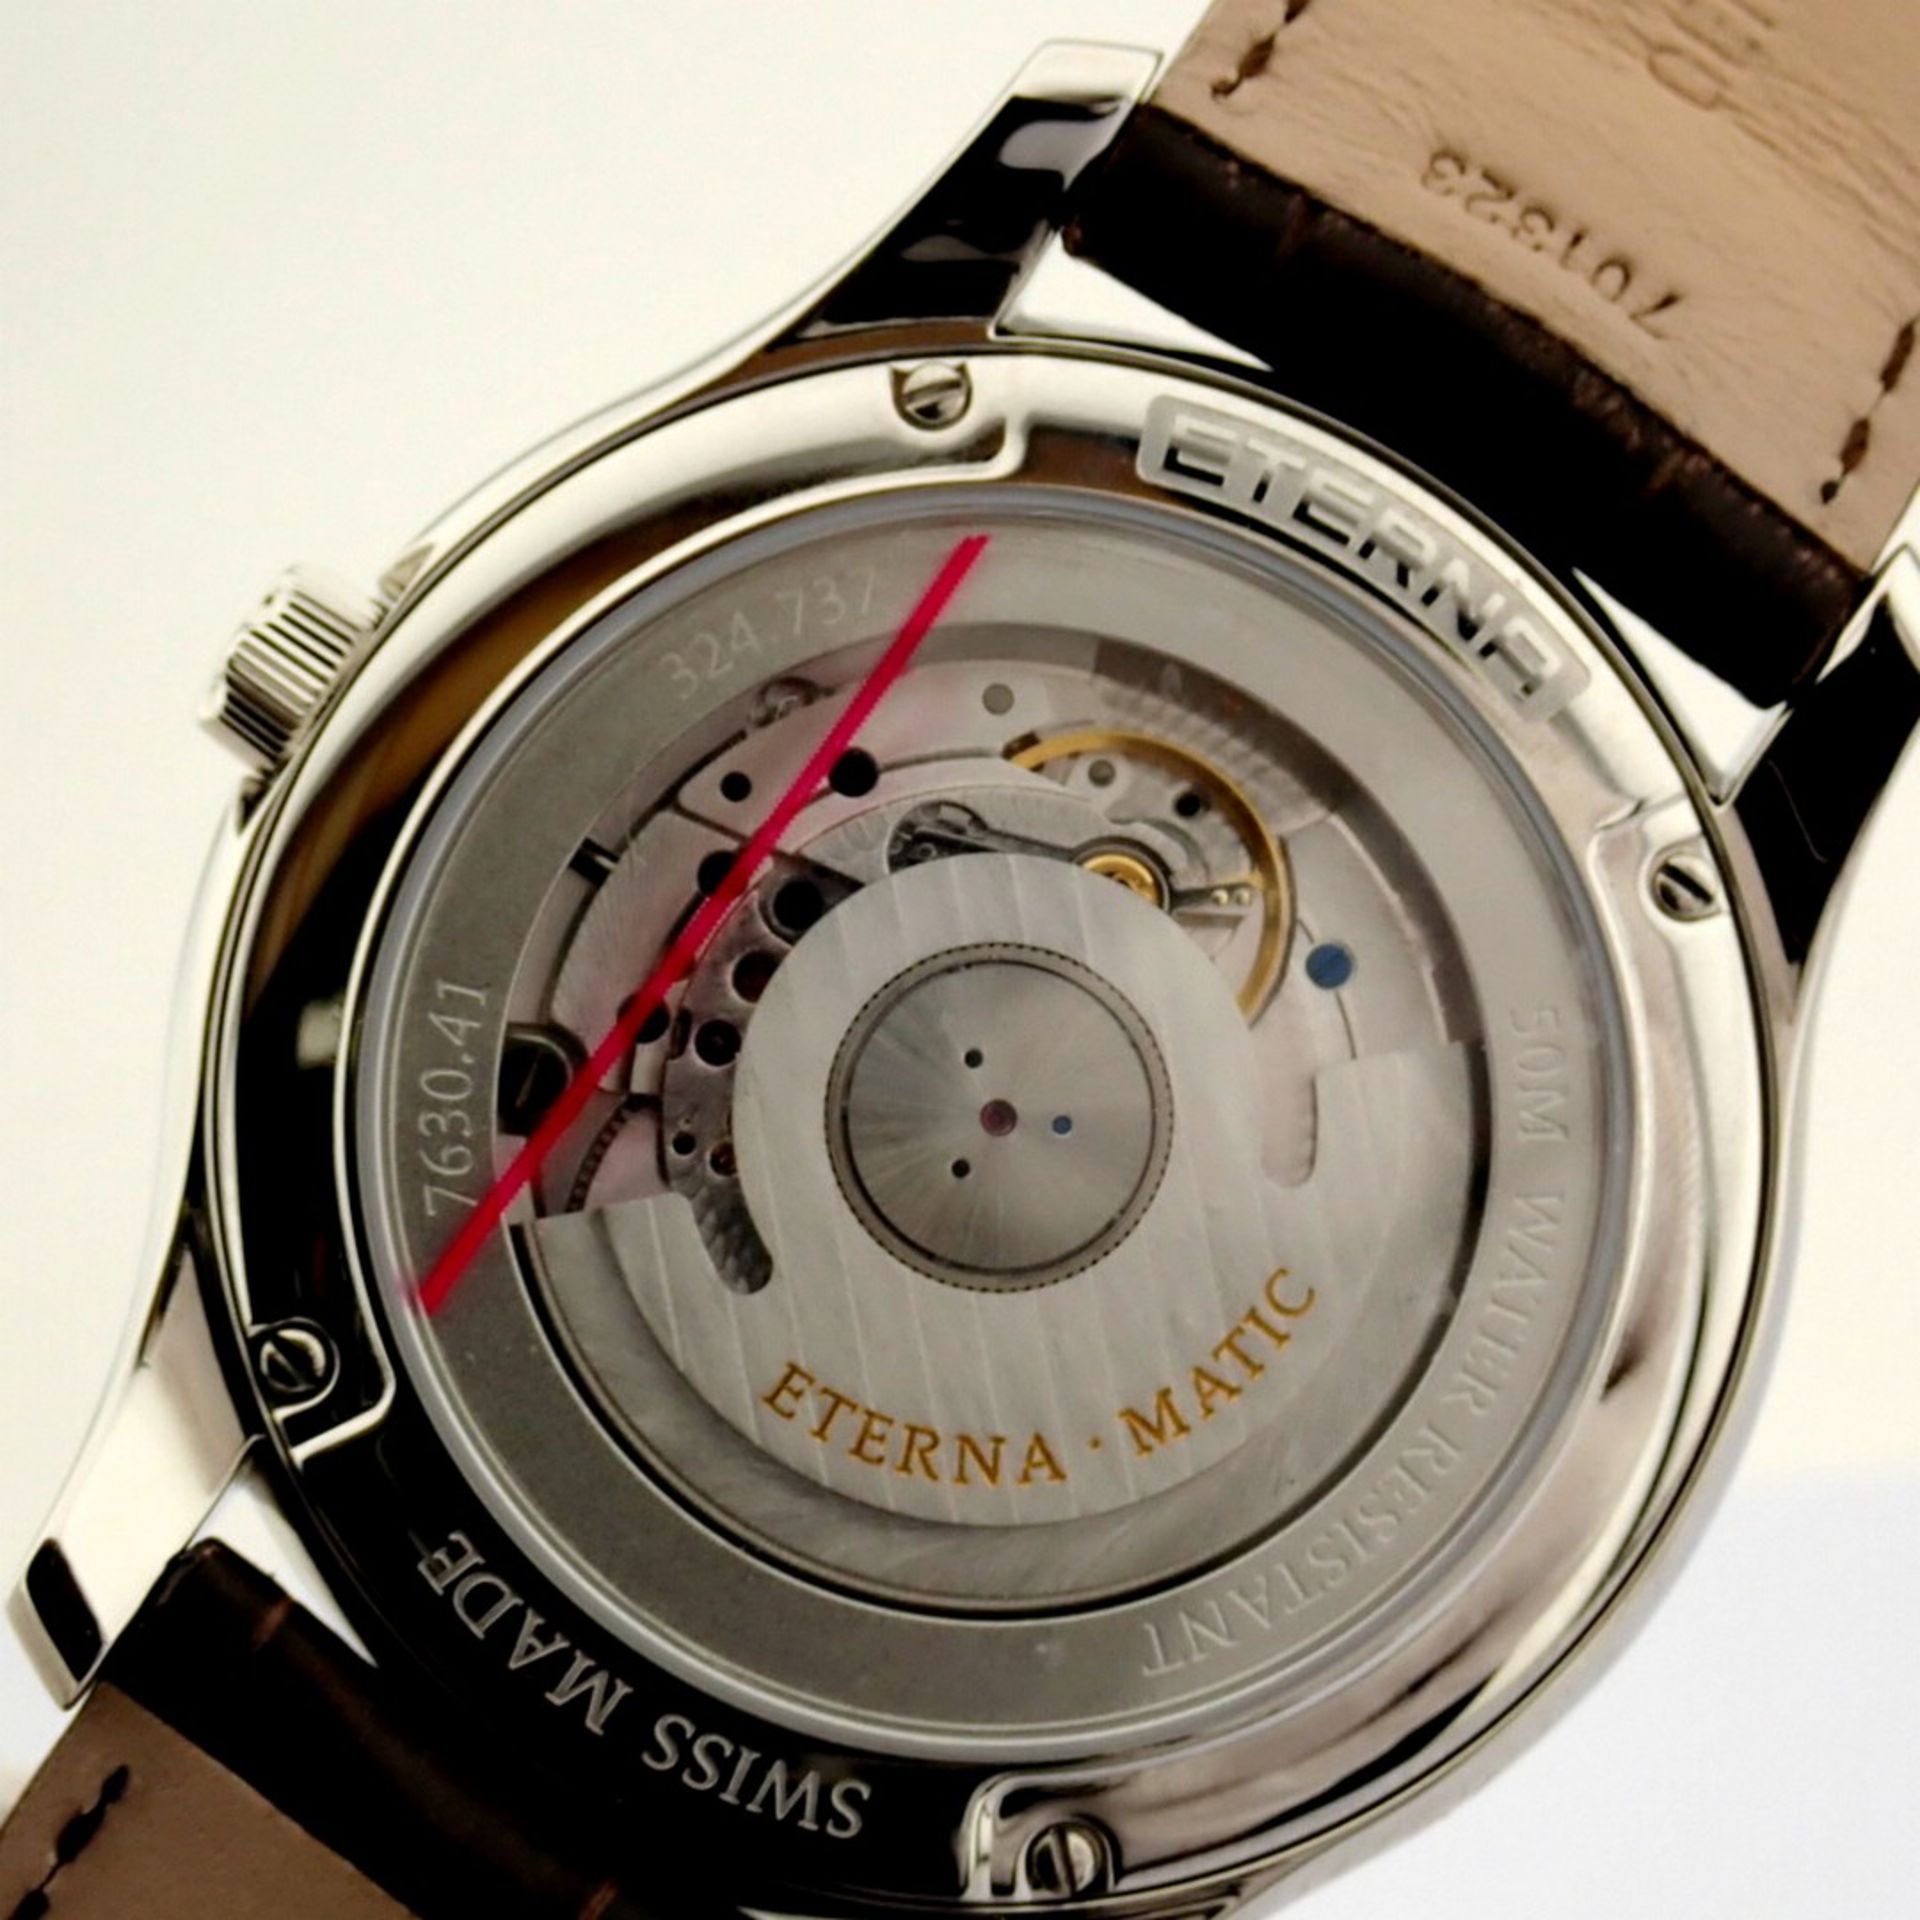 Eterna / Vaughan Big Date 7630.41 - Gentlmen's Steel Wrist Watch - Image 11 of 12